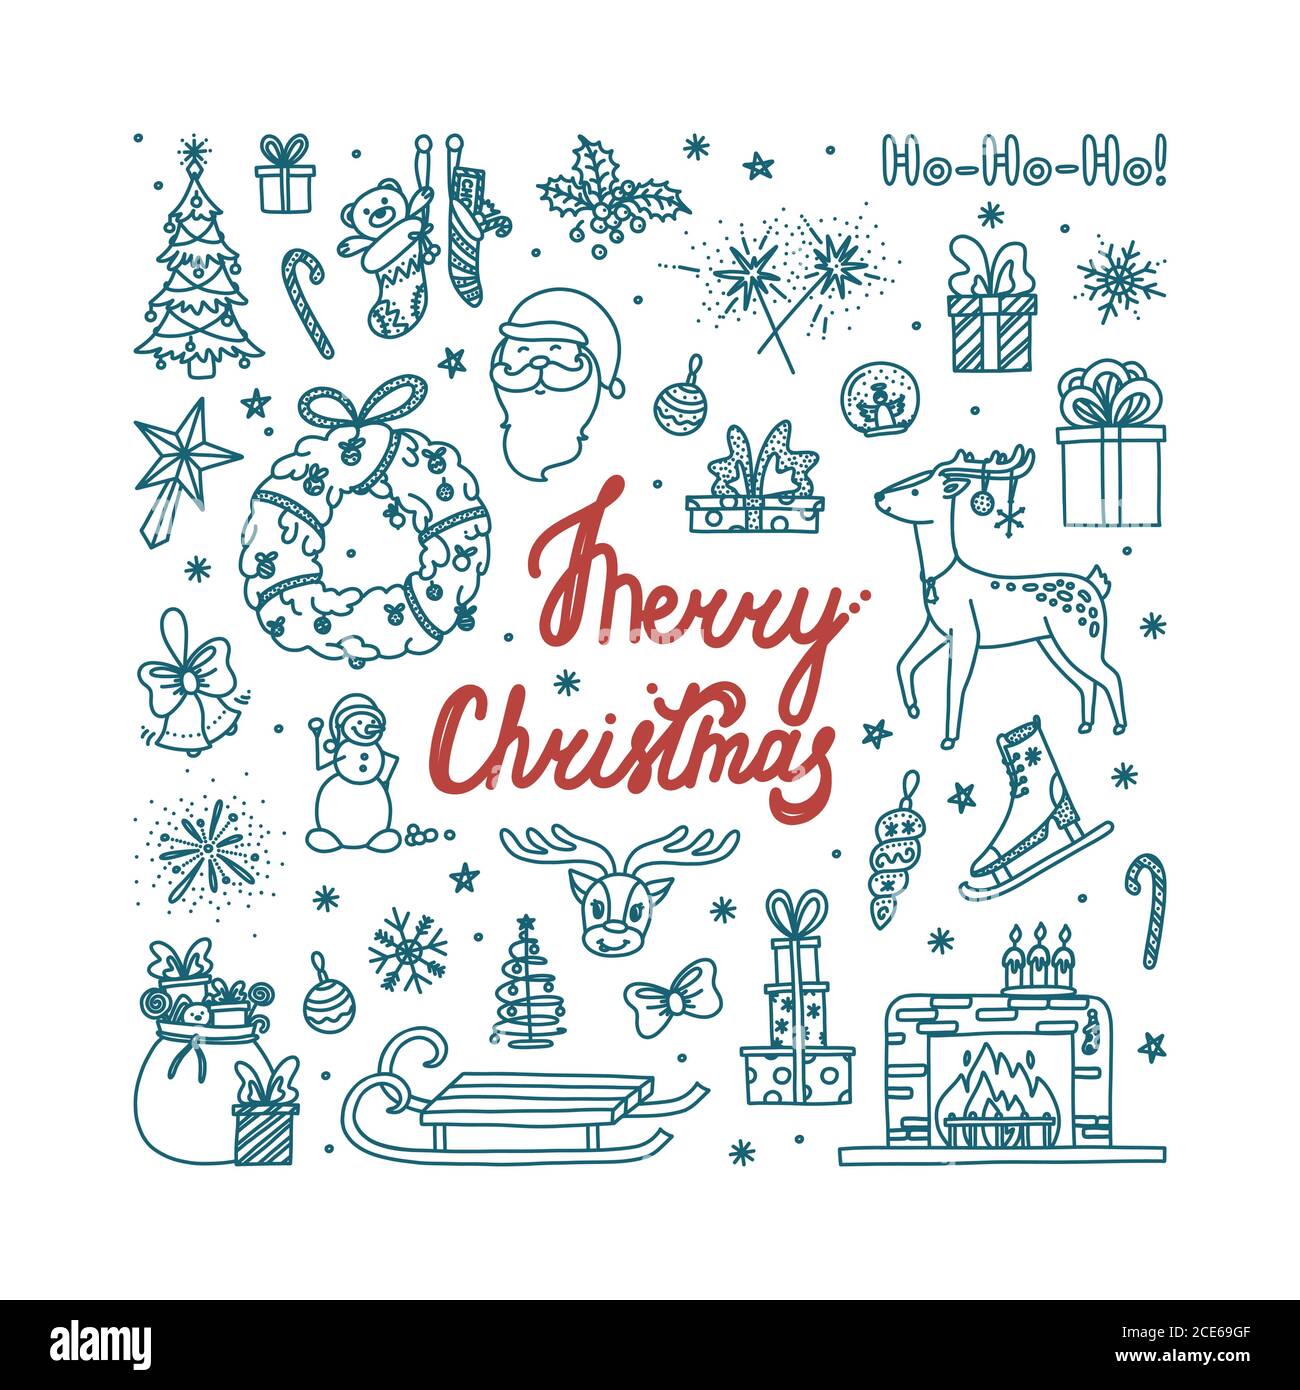 Frohe Weihnachten Doodle mit allen Ferienobjekten. Handgezeichnete Weihnachtsskizze. Isolierte Vektordarstellung Stock Vektor